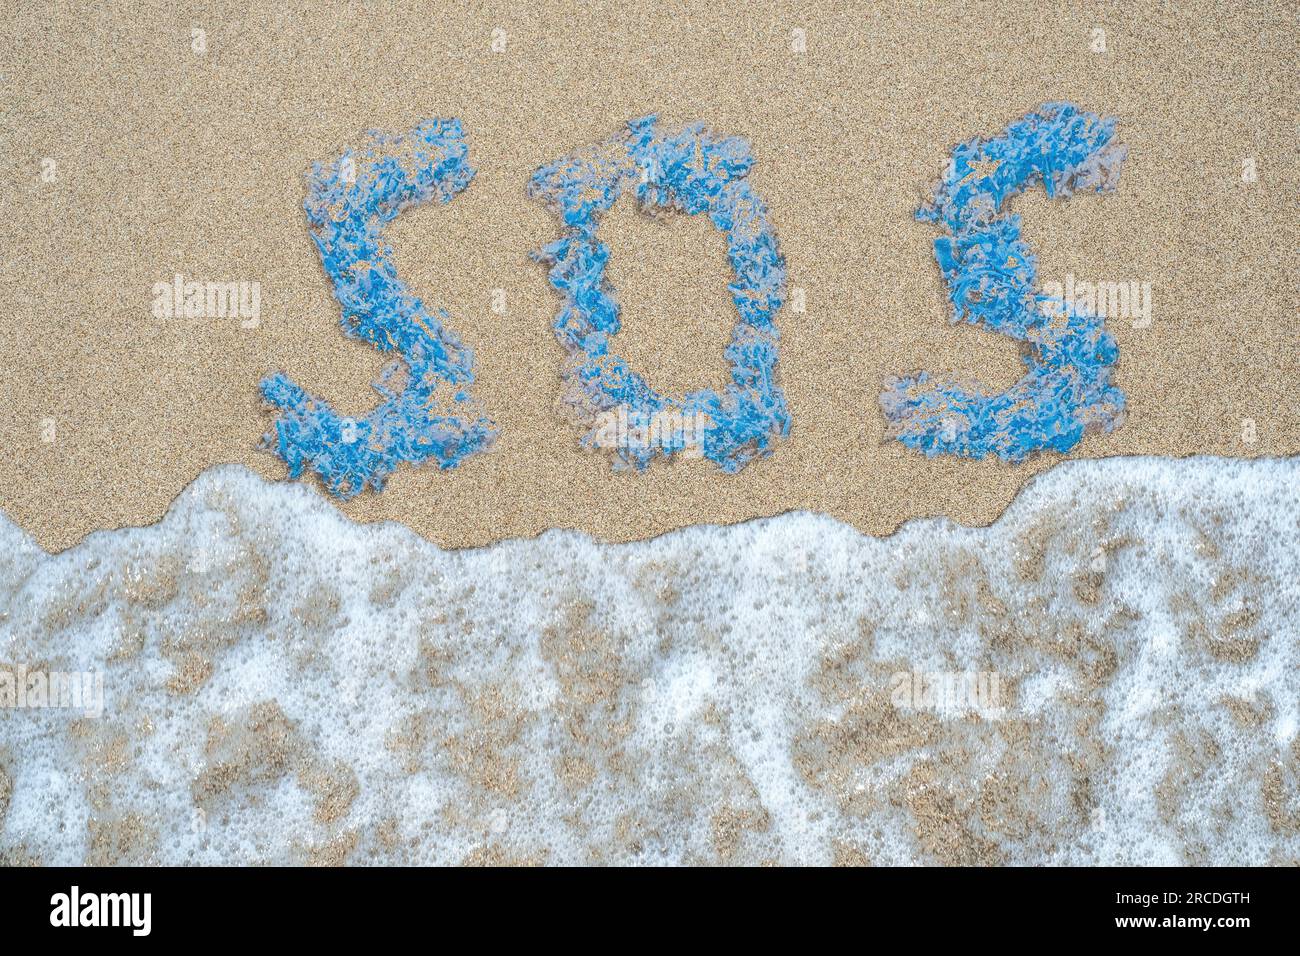 Das Wort SOS besteht aus Plastikteilen, die von der Welle an einem Sandstrand weggespült werden. Draufsicht. Helfen Sie dem Planeten. Rette die Ozeane. Stockfoto